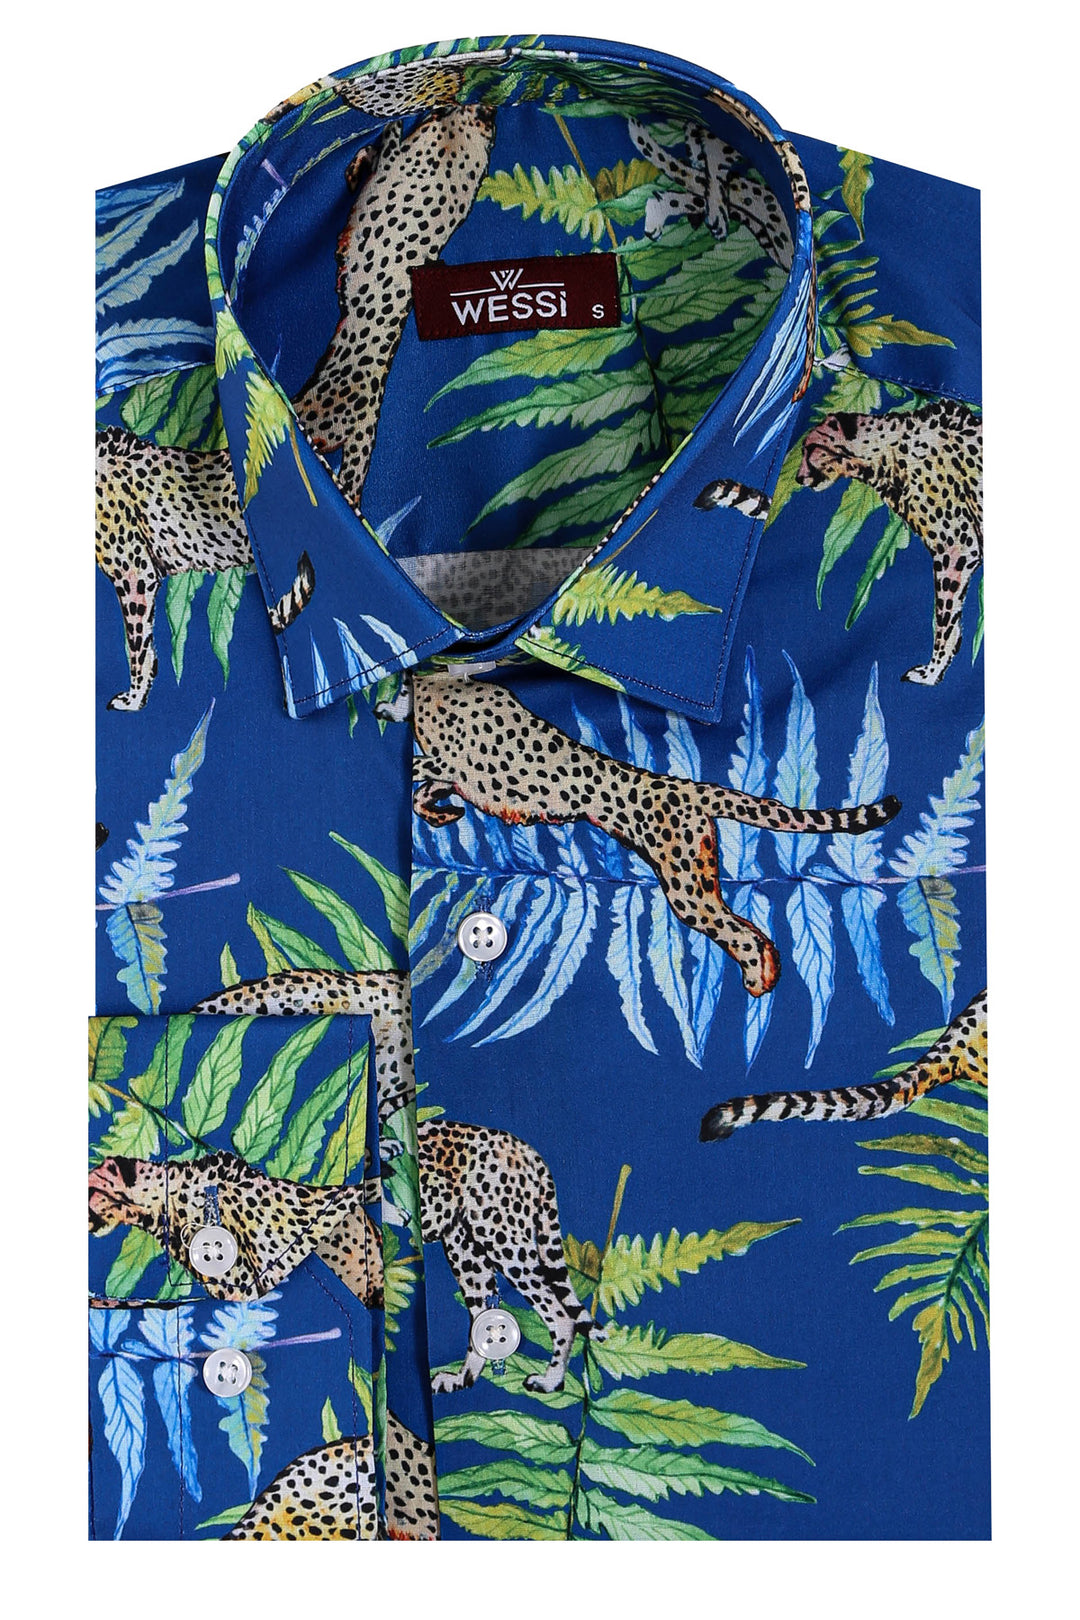 Tiger Patterned Slim Fit Long Sleeves Blue Men Shirt - Wessi